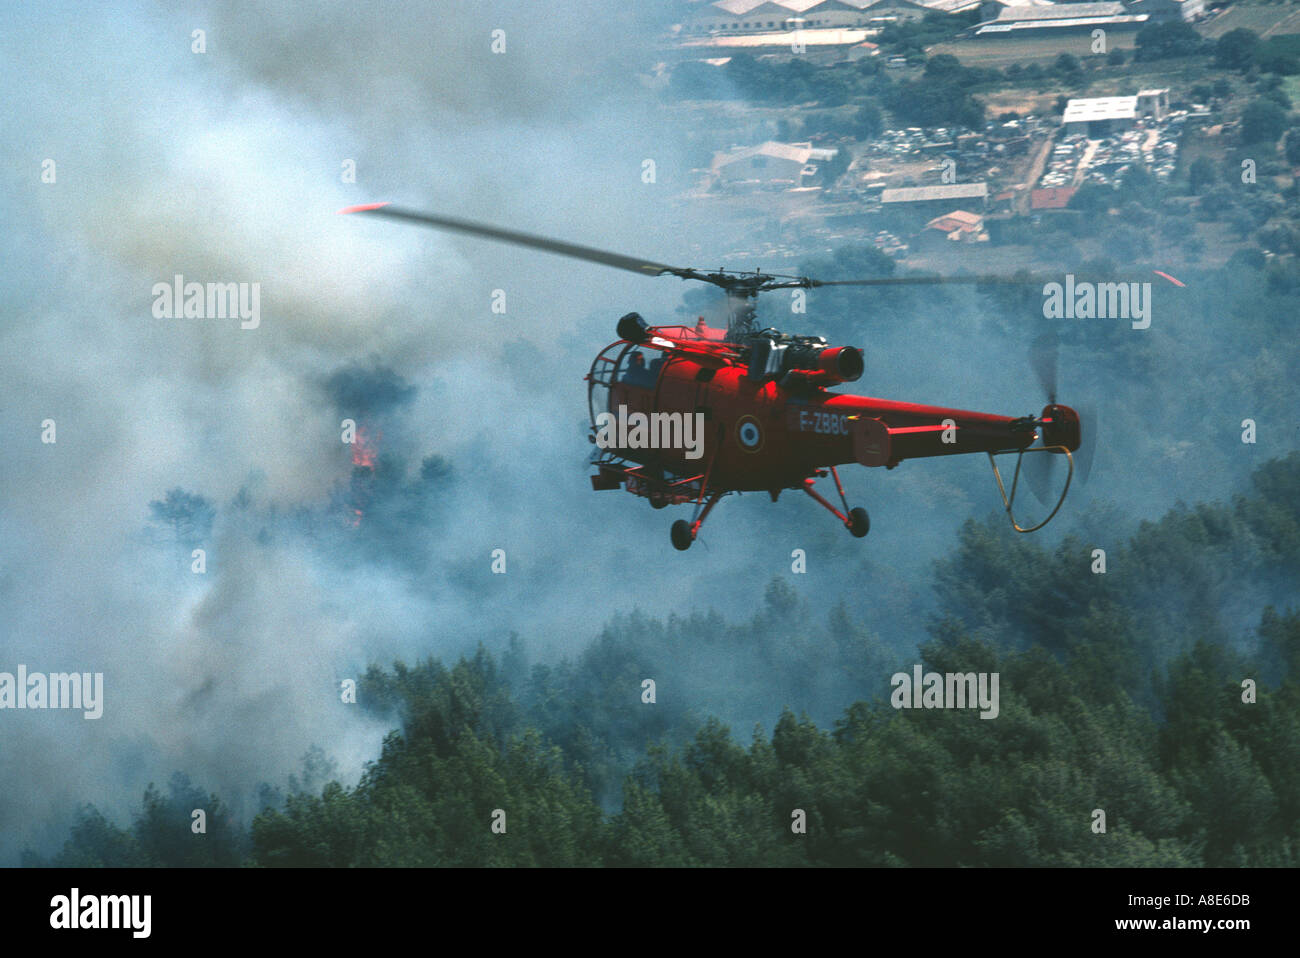 La commande de vol de l'hélicoptère Alouette III pompiers planant en face d'un nuage de fumée du feu, Provence, France, Europe, Banque D'Images